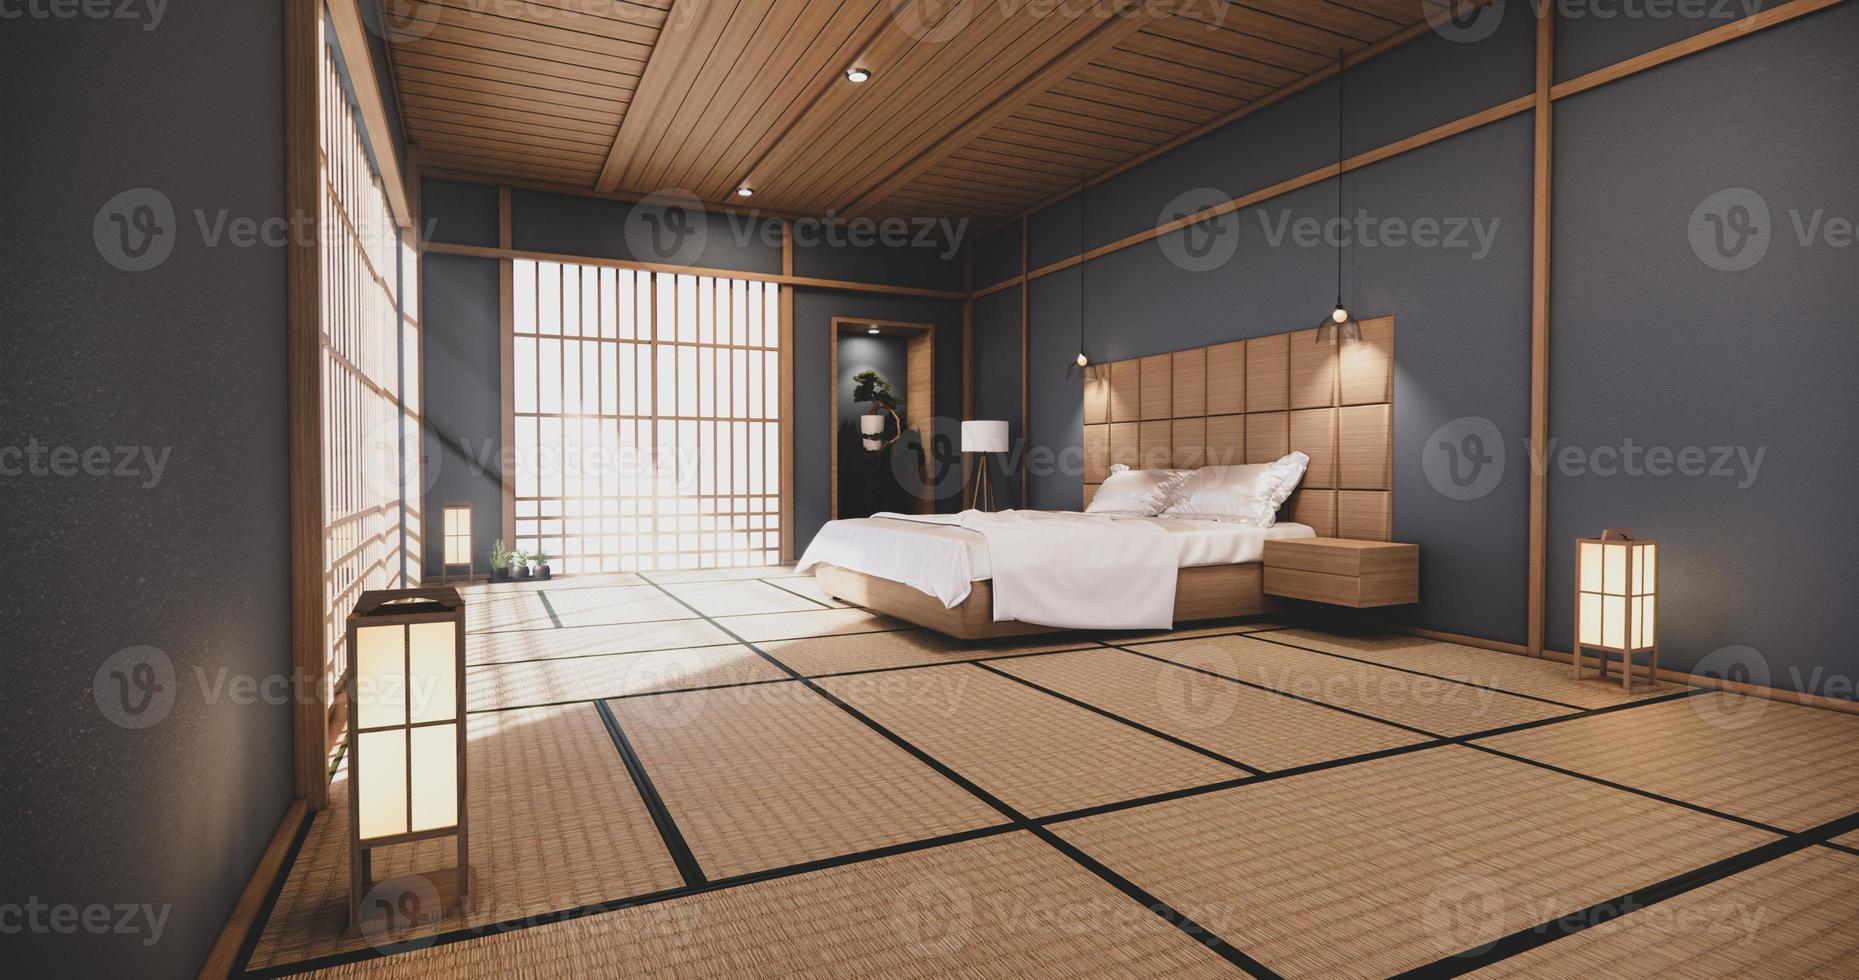 design giapponese della camera da letto blu scuro sull'interno della stanza tropicale e pavimento in tatami. rendering 3d foto